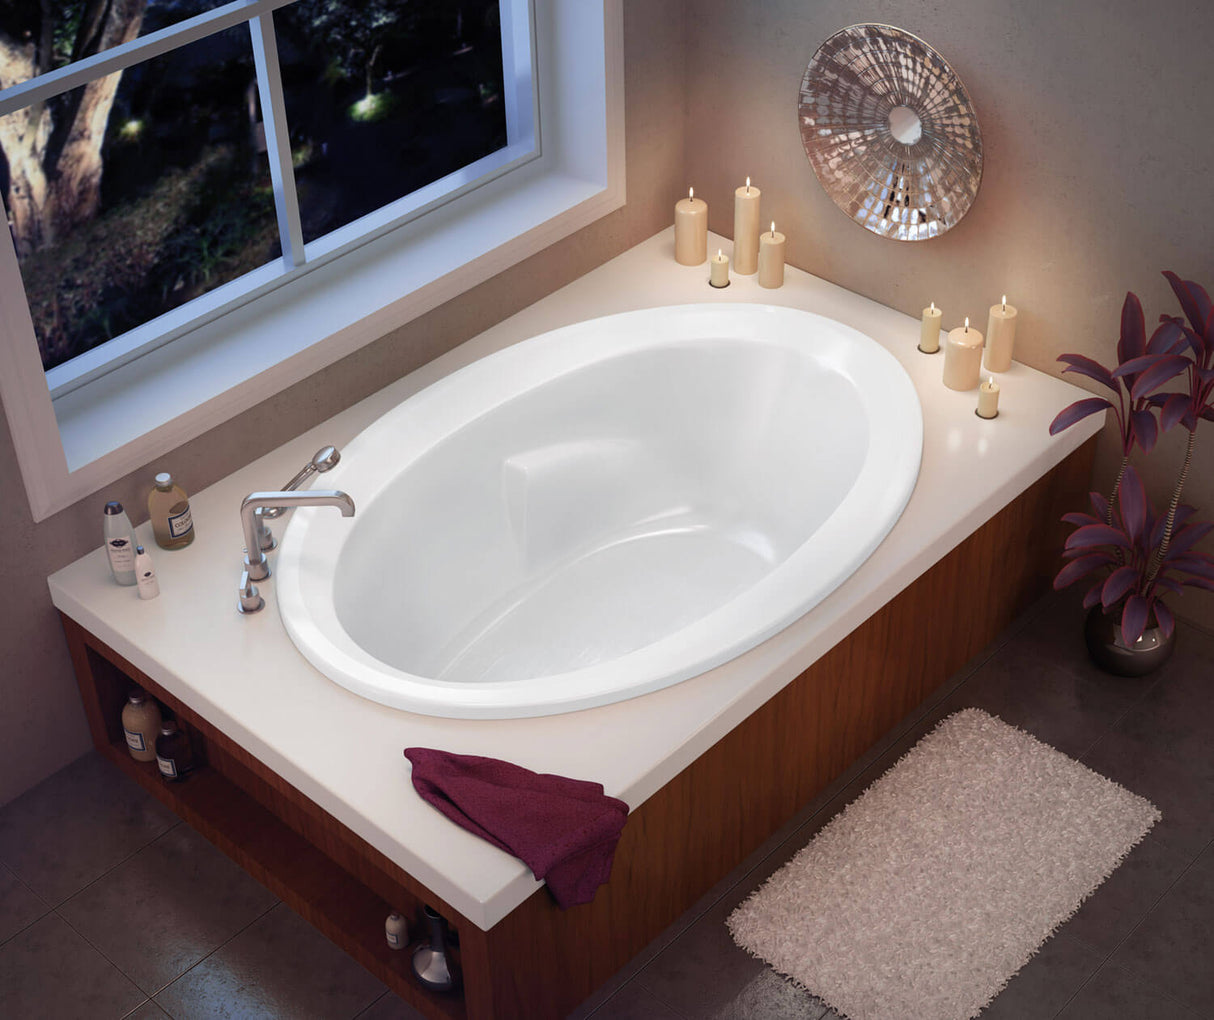 MAAX 100021-003-001-000 Twilight 60 x 42 Acrylic Drop-in End Drain Whirlpool Bathtub in White